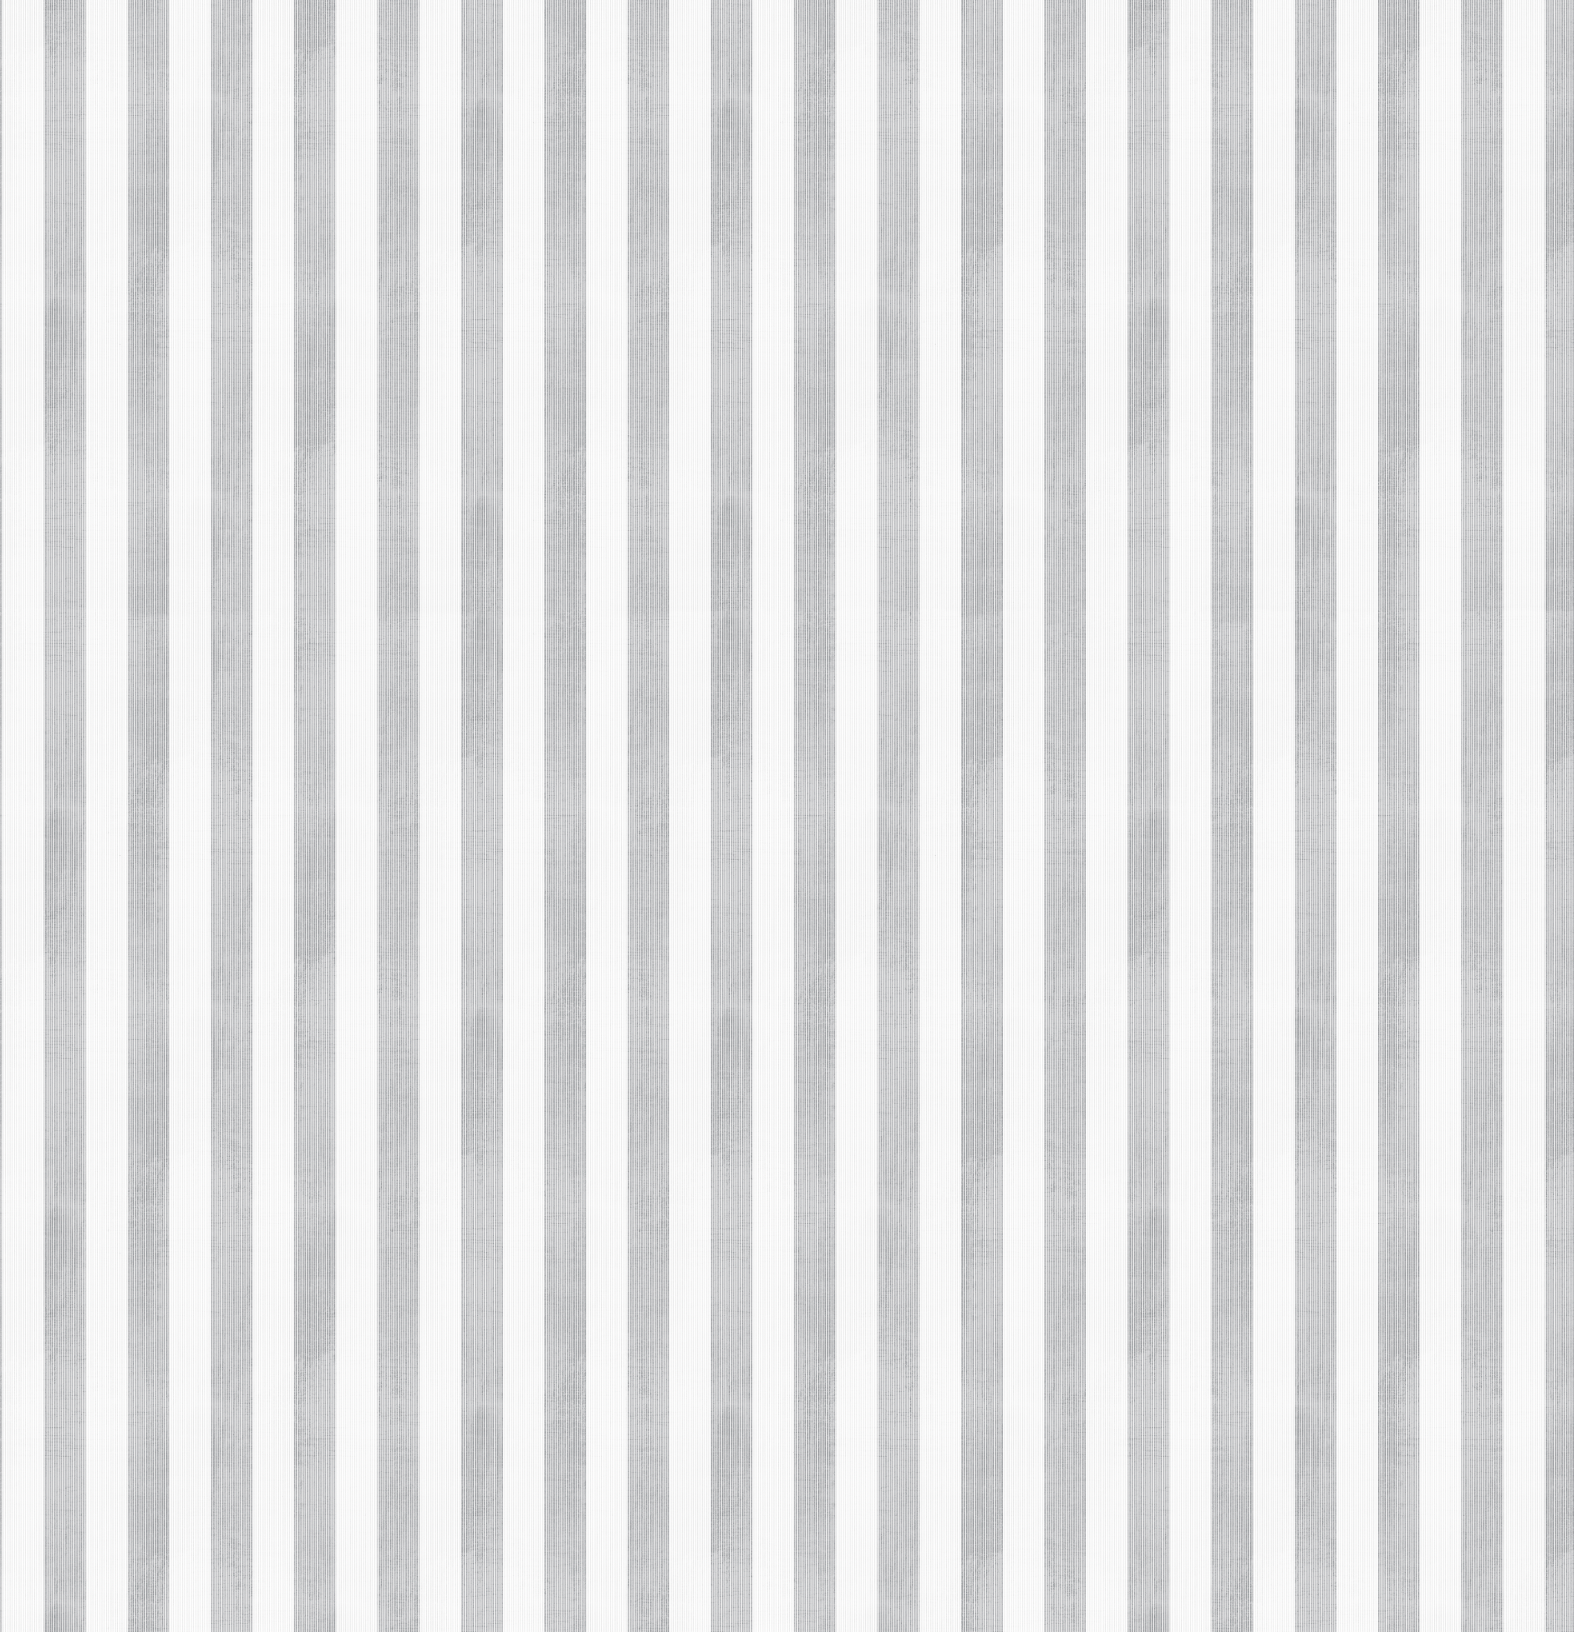 Gabbandra Stripes - WALL BLUSH